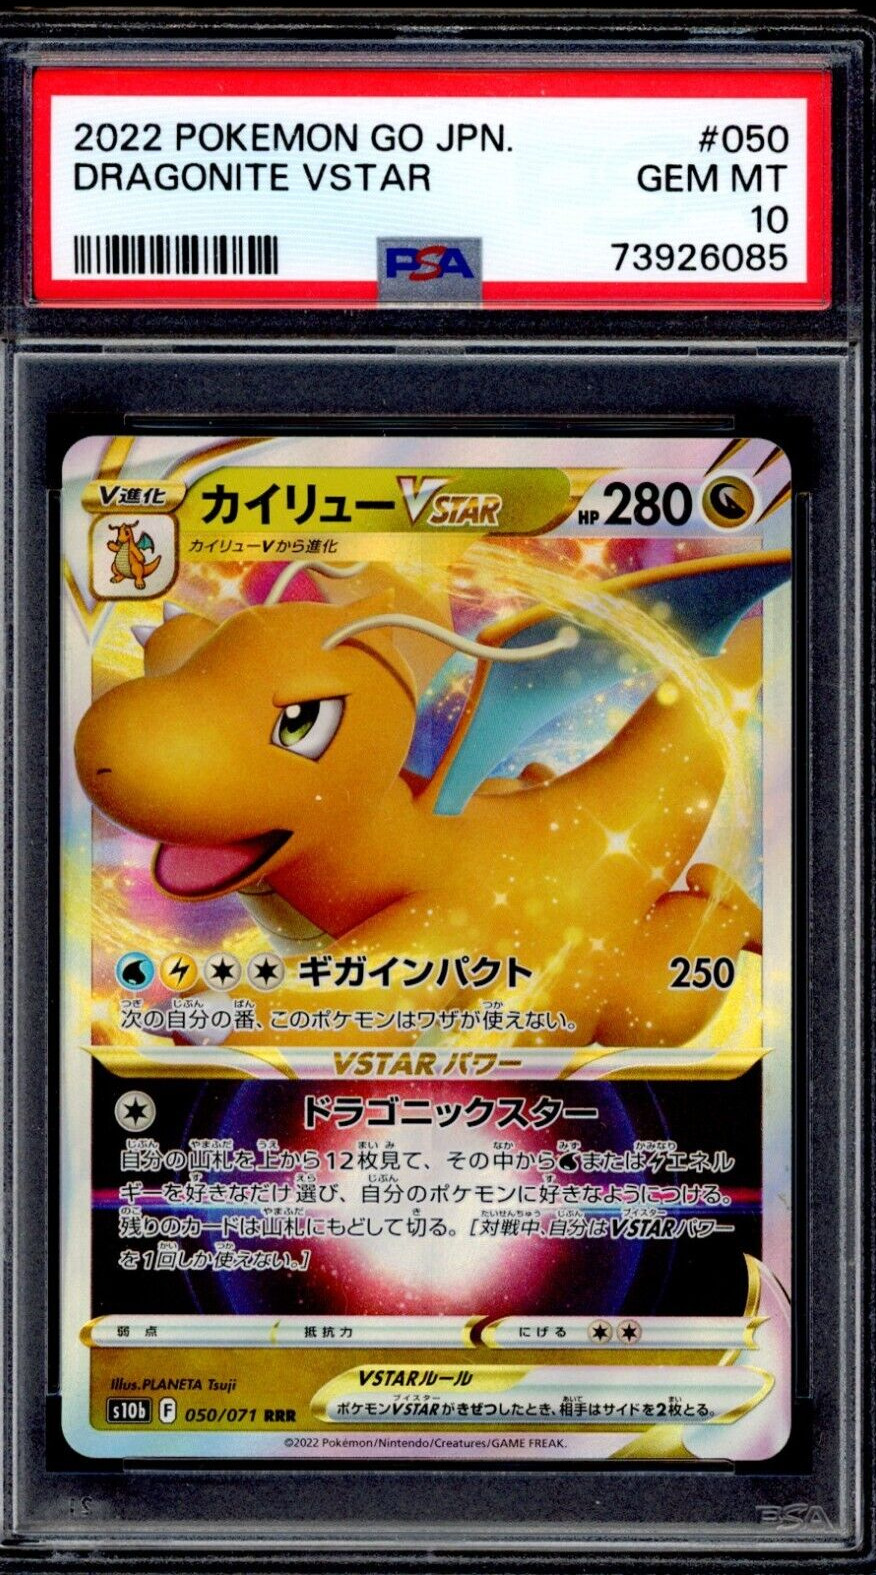 PSA 10 Dragonite Vstar 2022 Pokemon Card 050/071 Pokemon GO